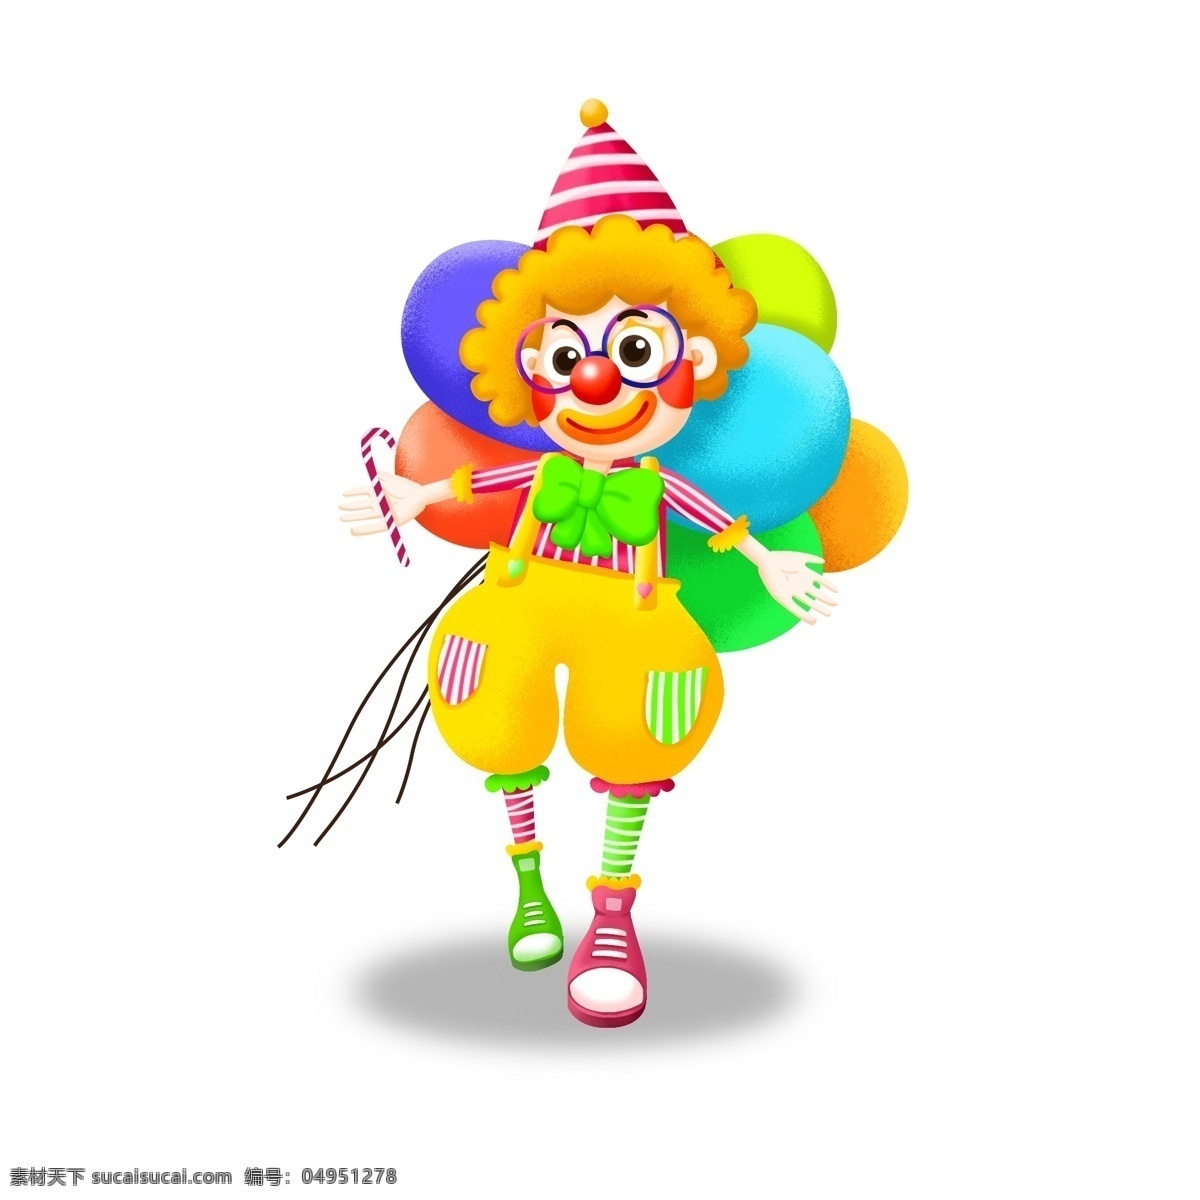 小丑 愚人节 卡通 形象 人物 元素 气球 装饰 滑稽 可爱